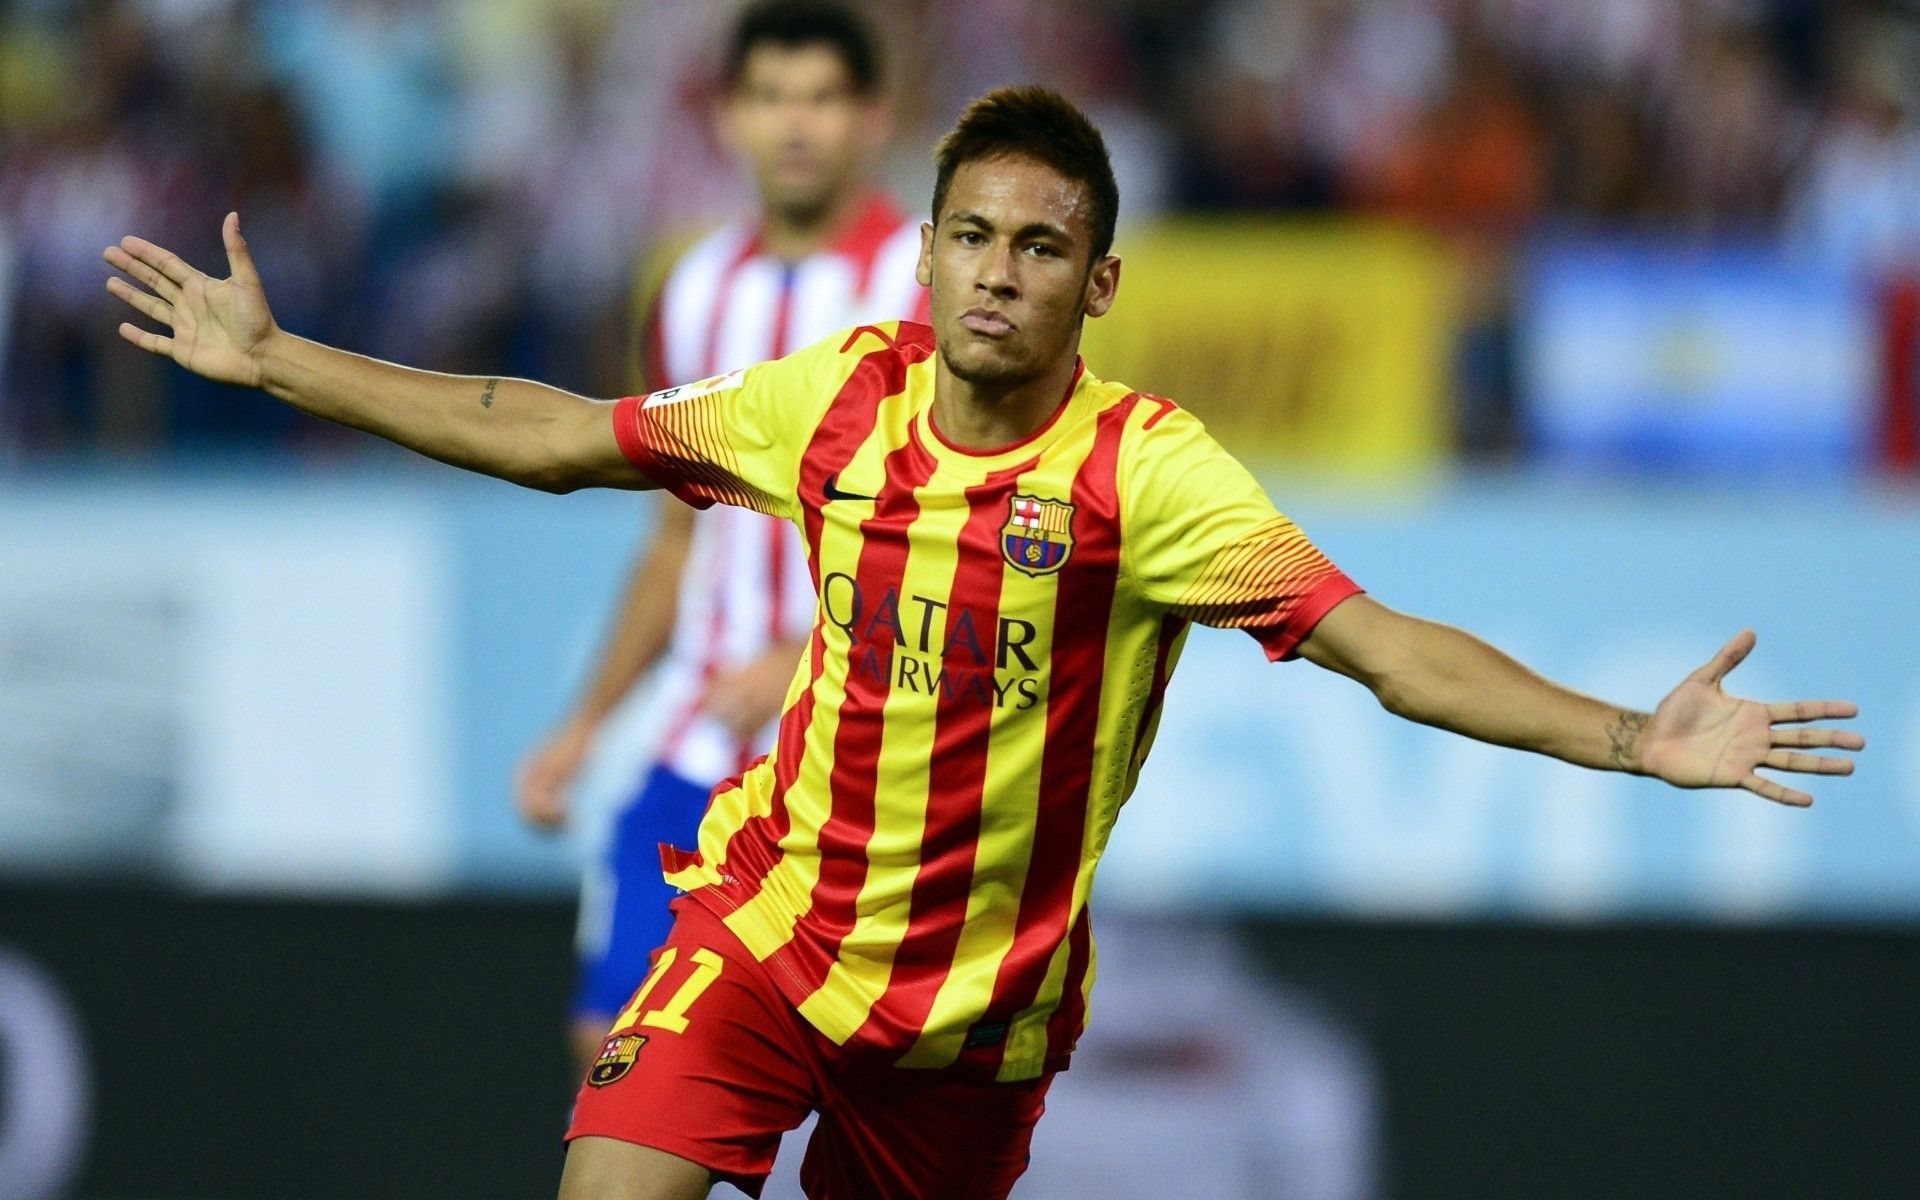 ダウンロード画像 Neymar 目標 サッカー選手 Neymar Jr Fcバルセロナ サッカー星 画面の解像度 19x10 壁紙 デスクトップ上